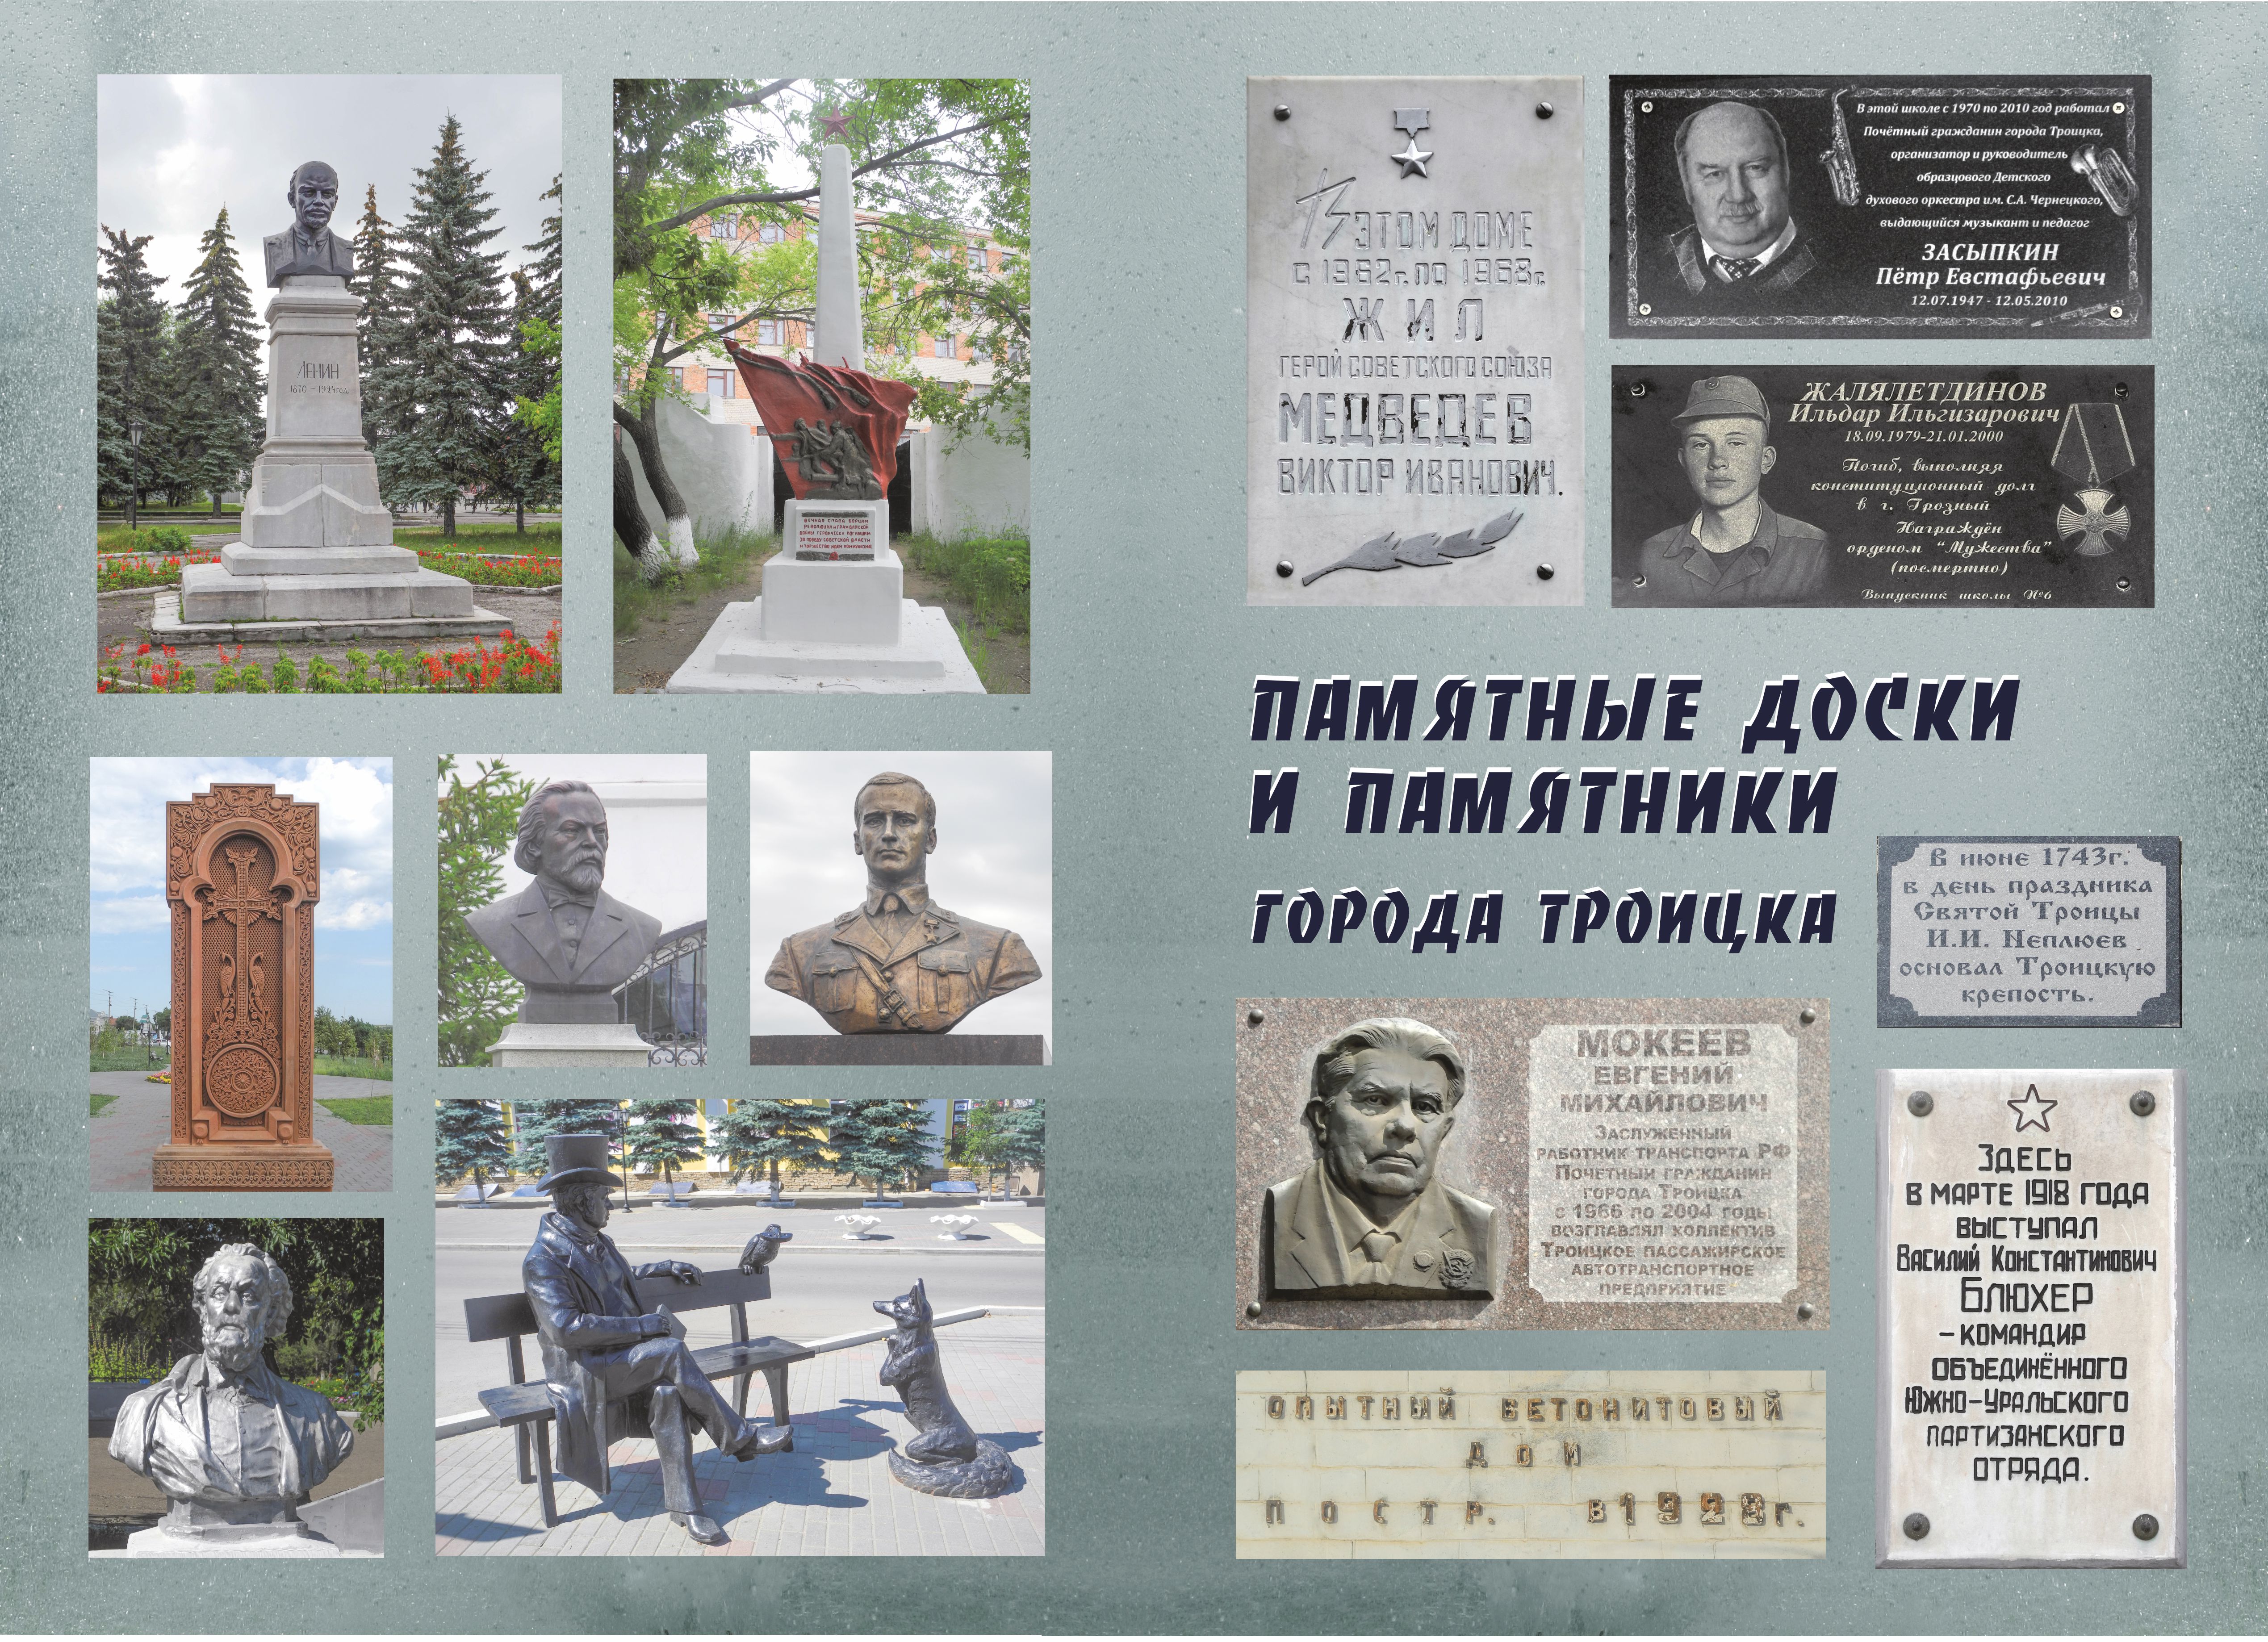 Памятные доски  и памятники города Троицка